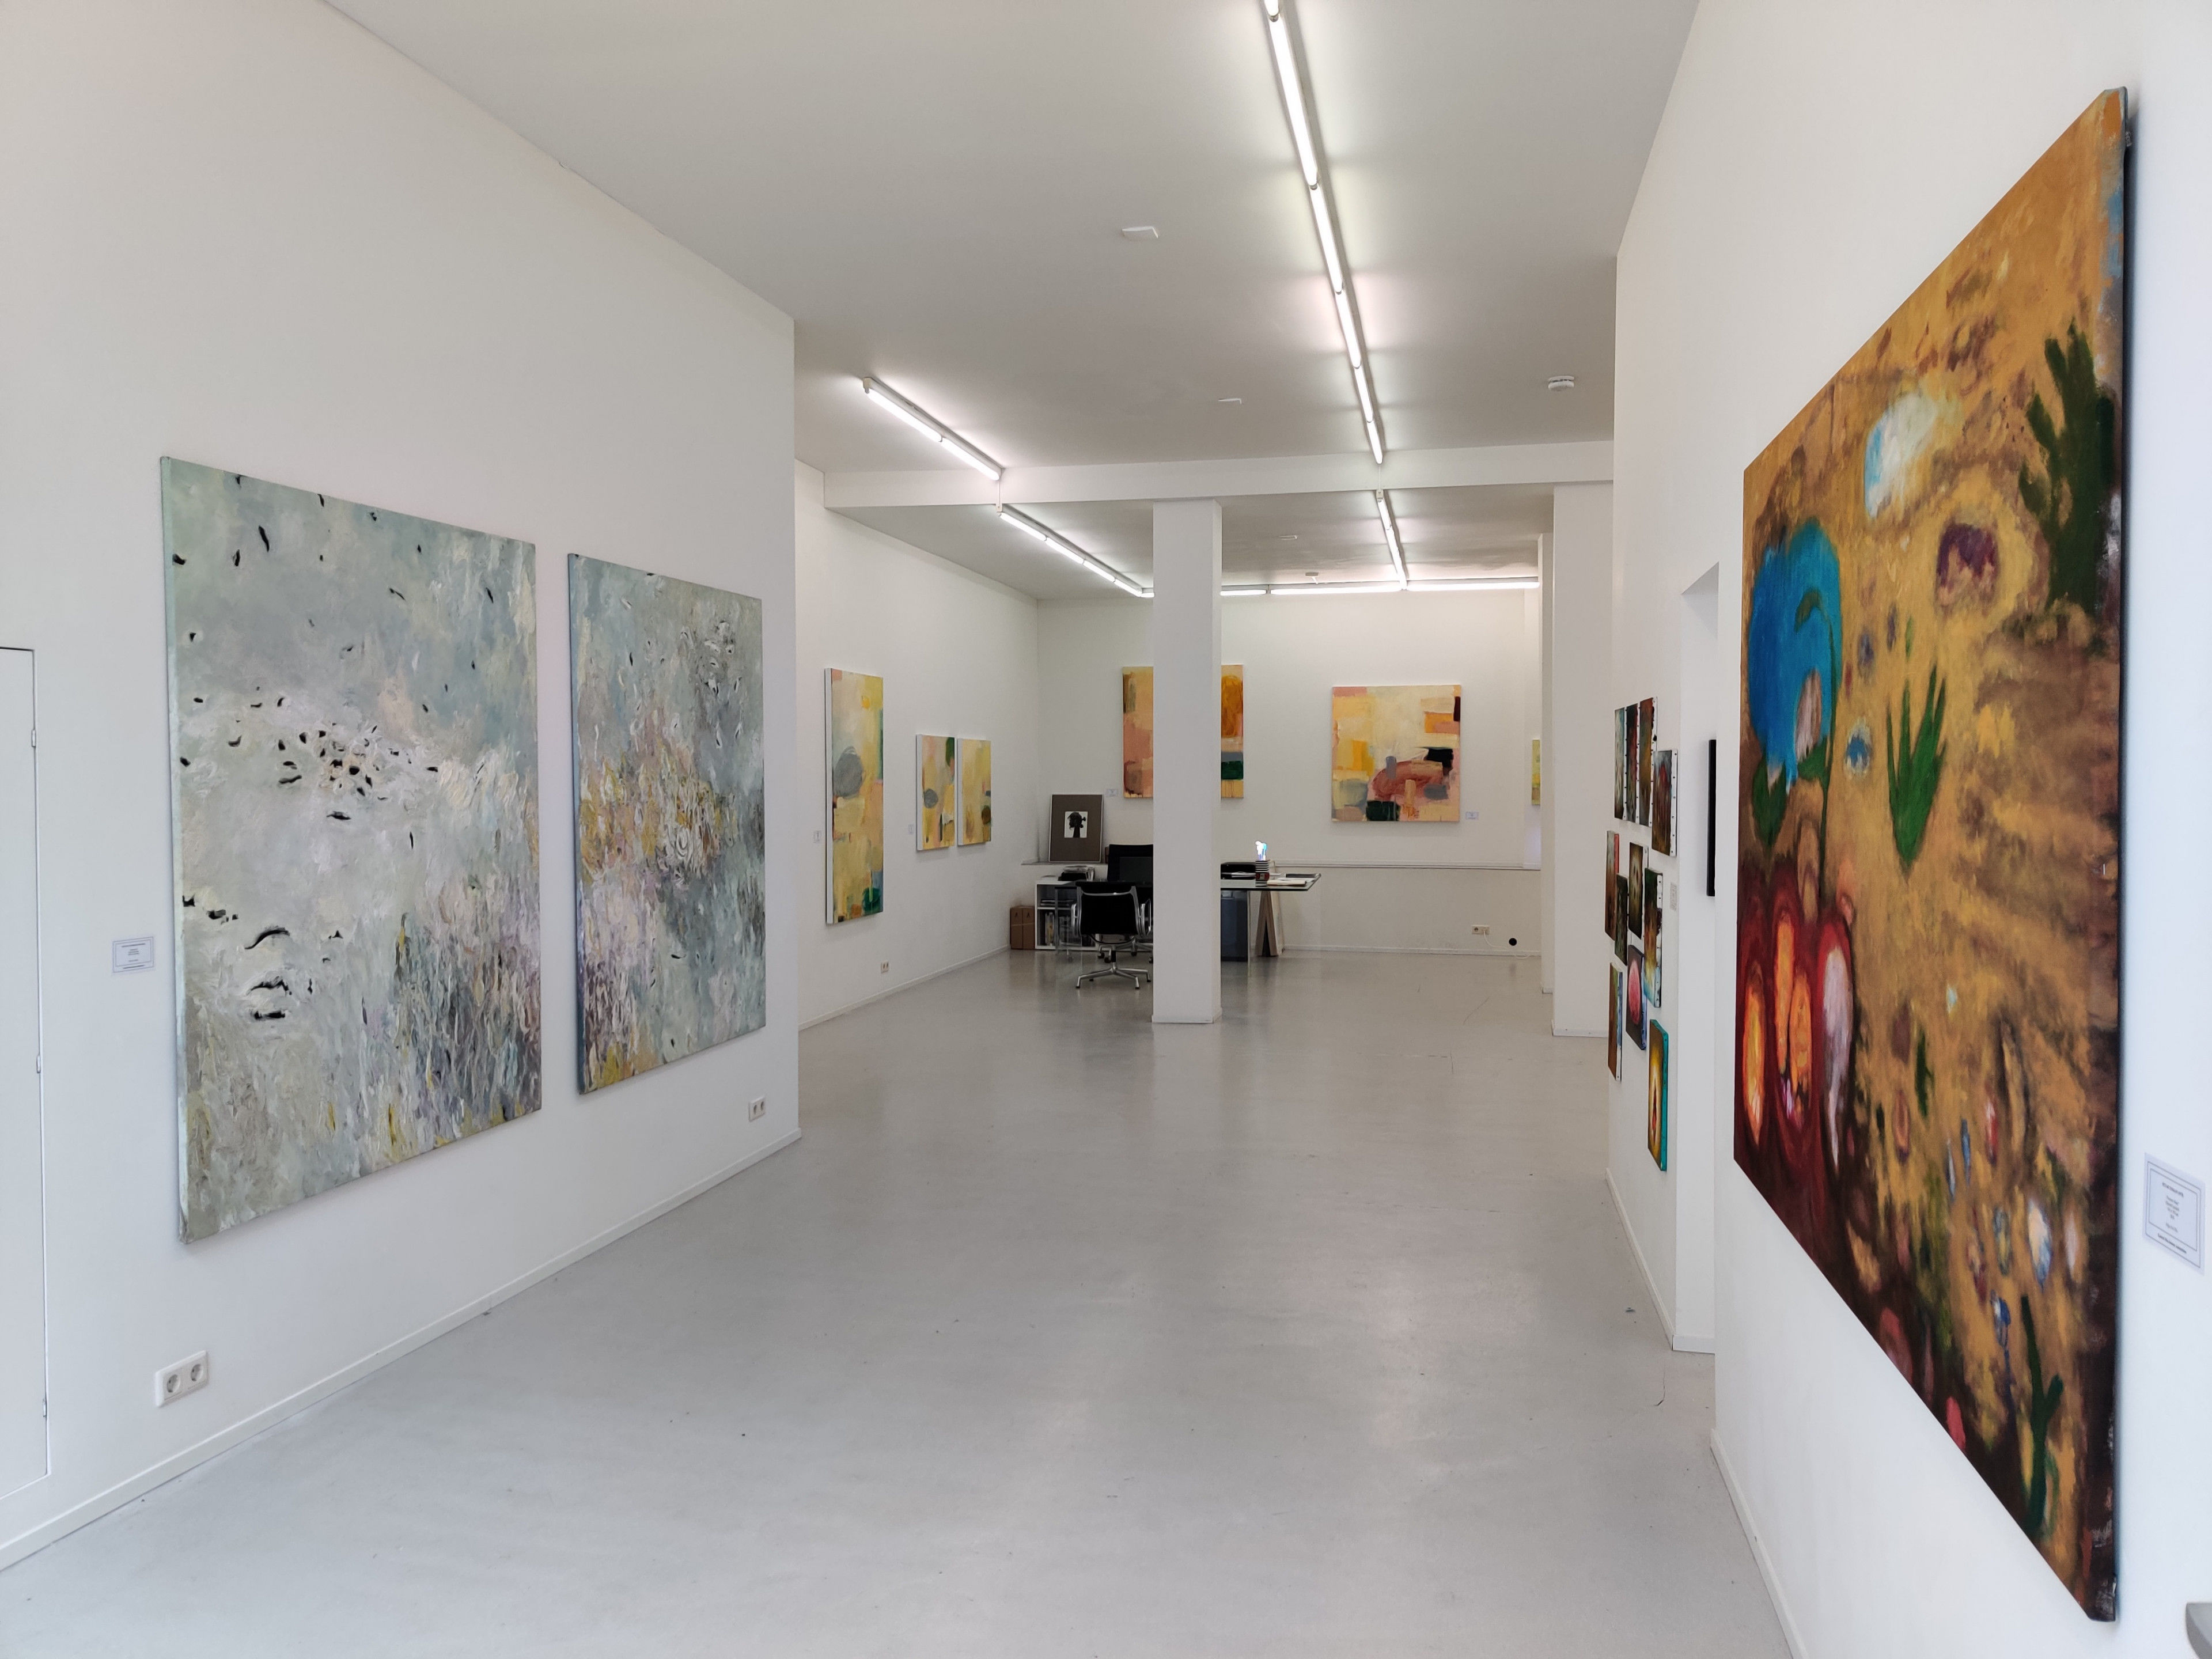 'Kunst kopen in Amsterdam'; impressie van de galerie van Mia Joosten met vooral moderne en abstracte kunst